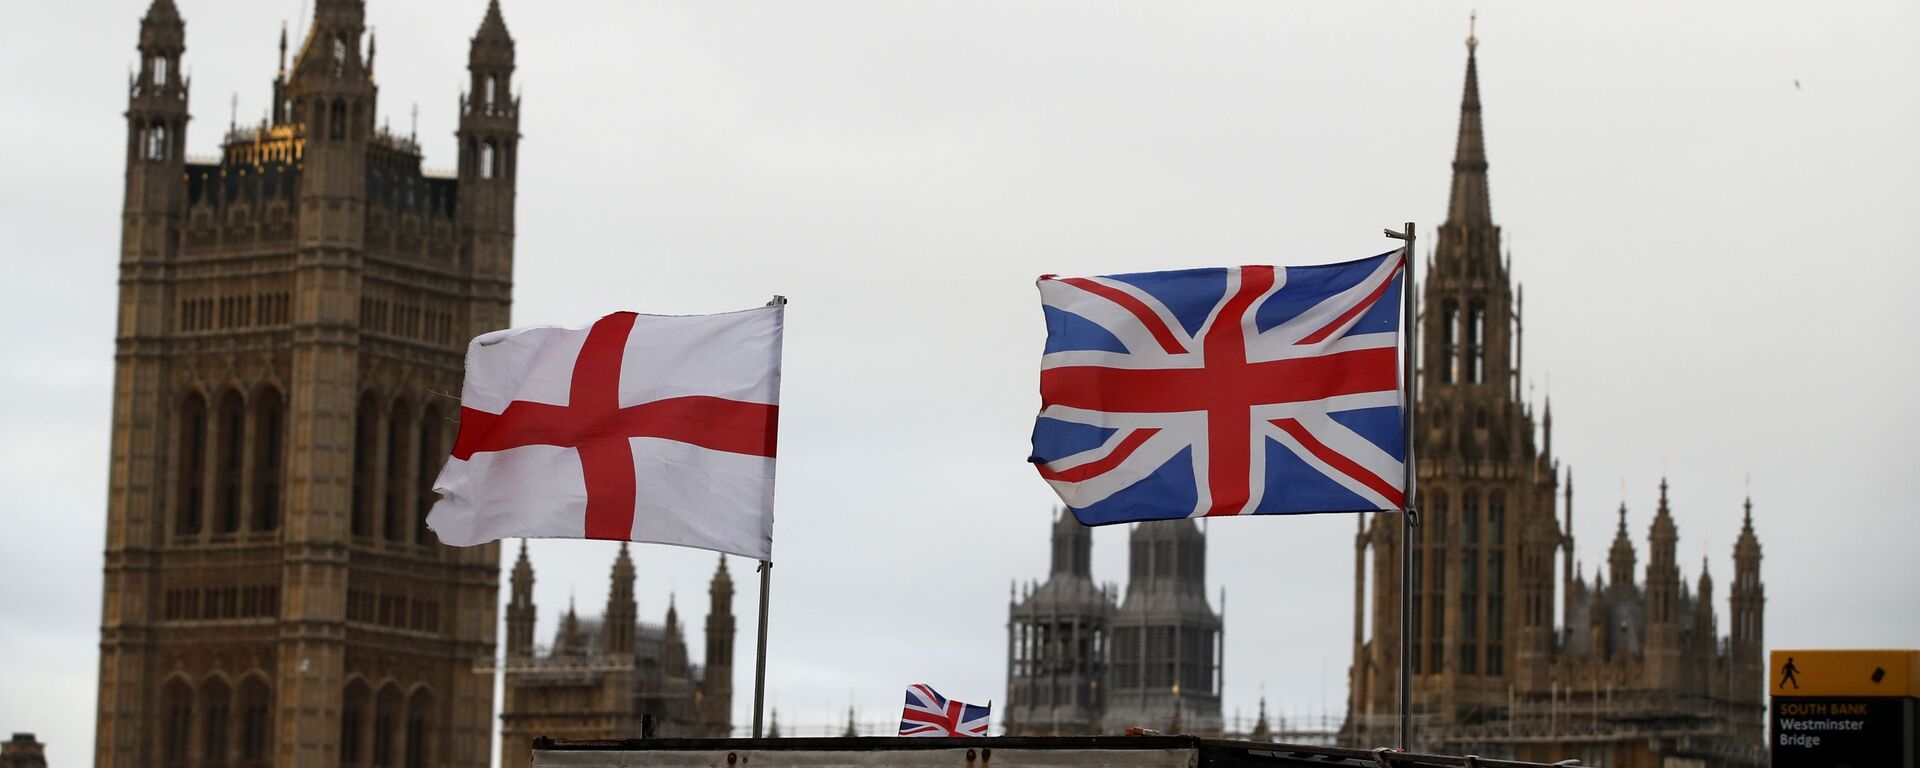 Британска и енглеска застава испред зграде британског парламента у Лондону - Sputnik Србија, 1920, 28.01.2021